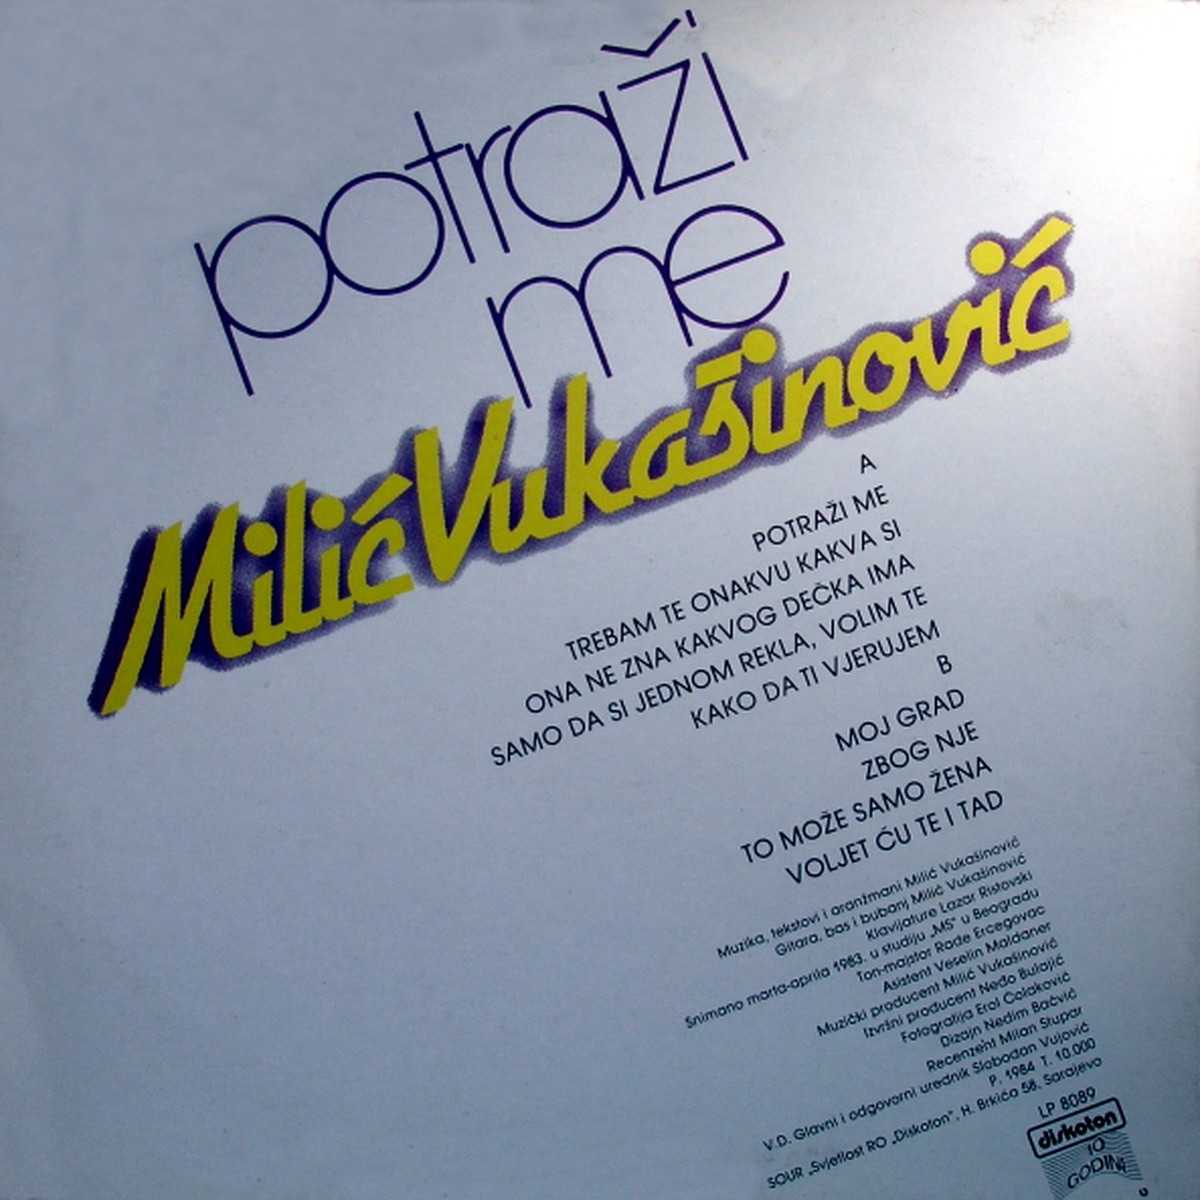 Milic Vukasinovic 1984 Potrazi me b